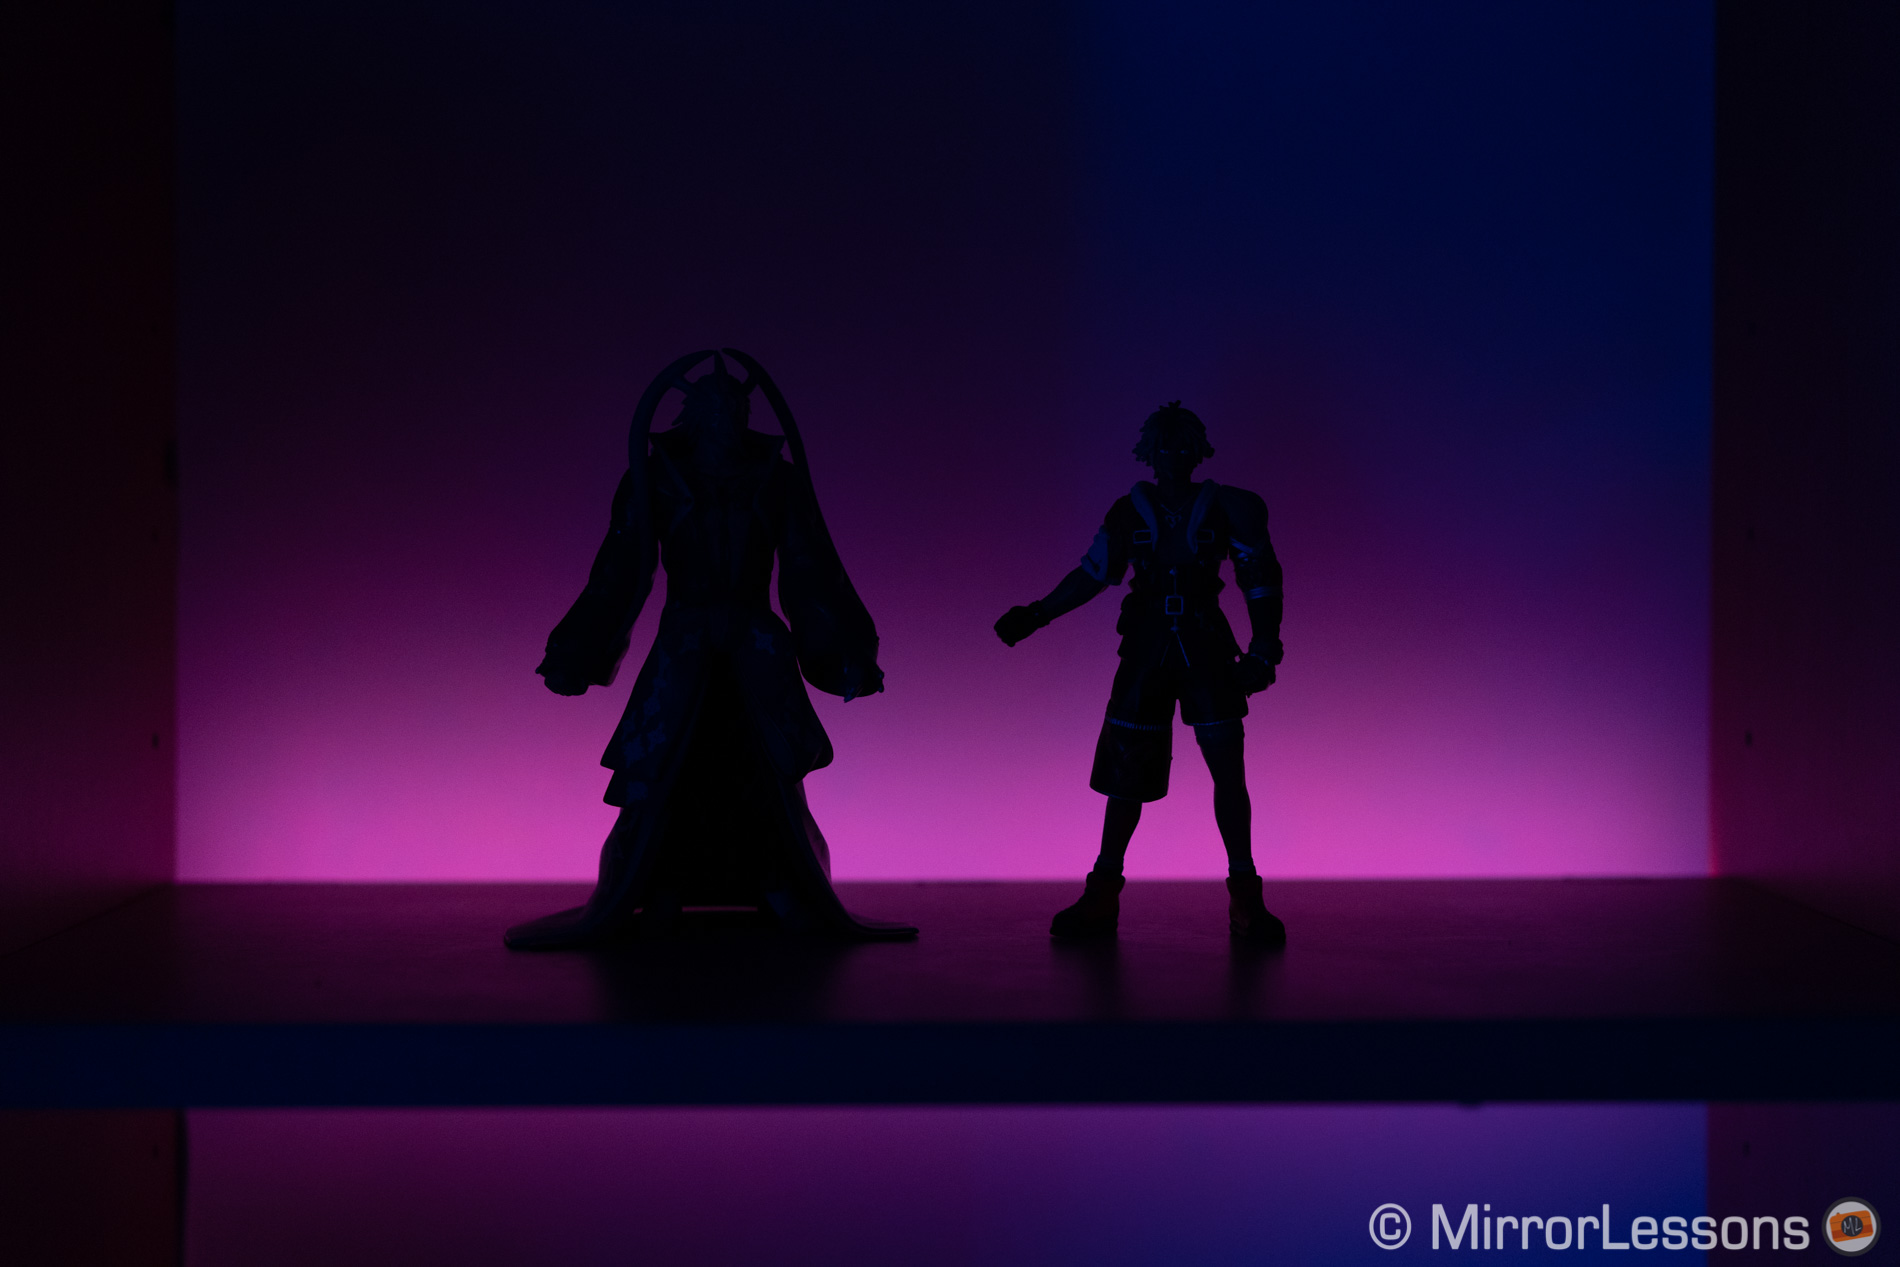 Sylwetka dwóch figur akcji, z fioletowym światłem LED w tle. Bez pasma